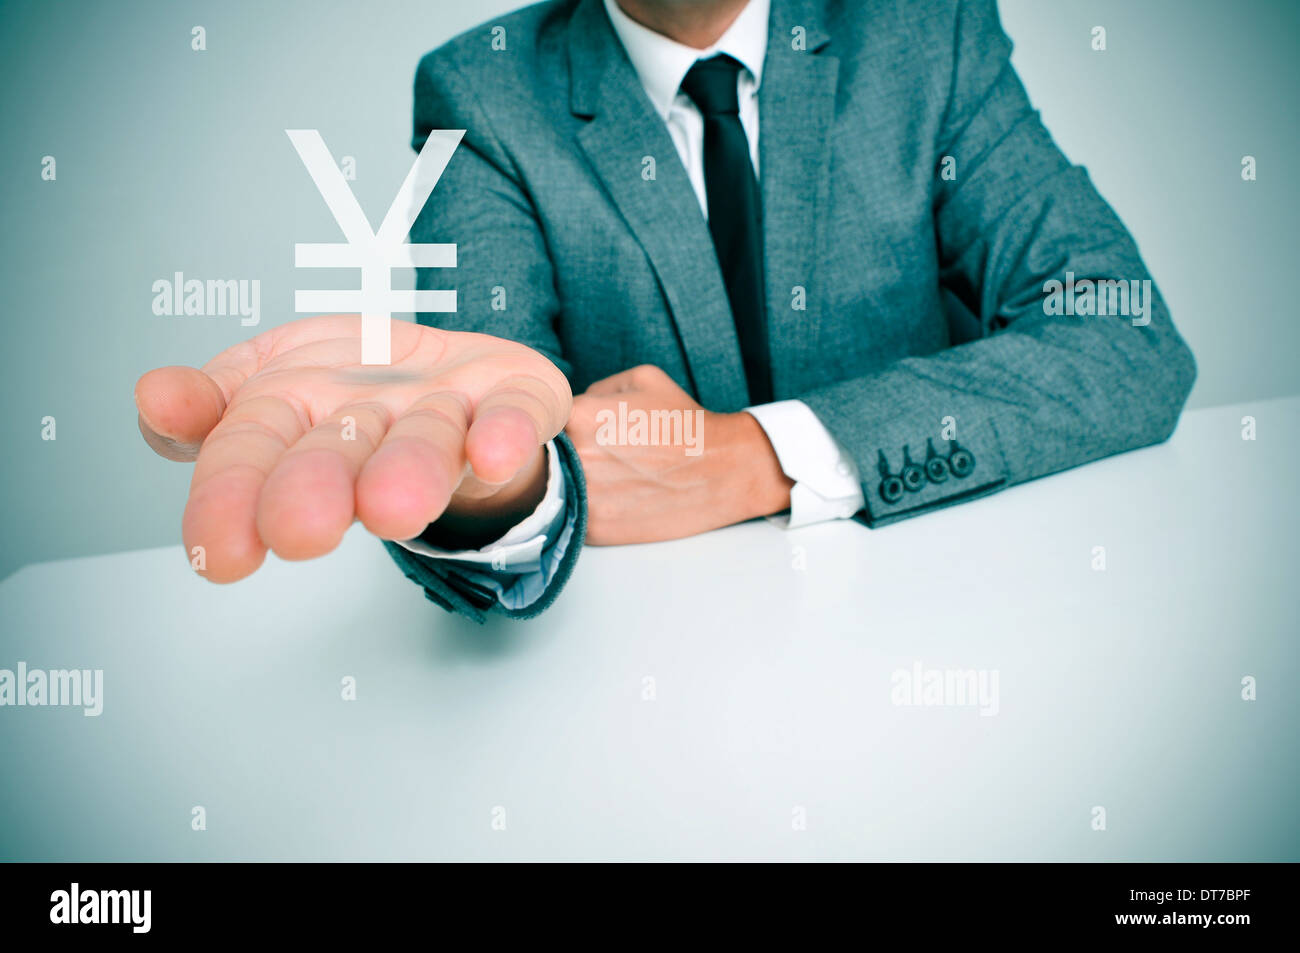 Un homme assis dans un bureau montrant un yuan chinois ou japonais yen sign dans sa main Banque D'Images